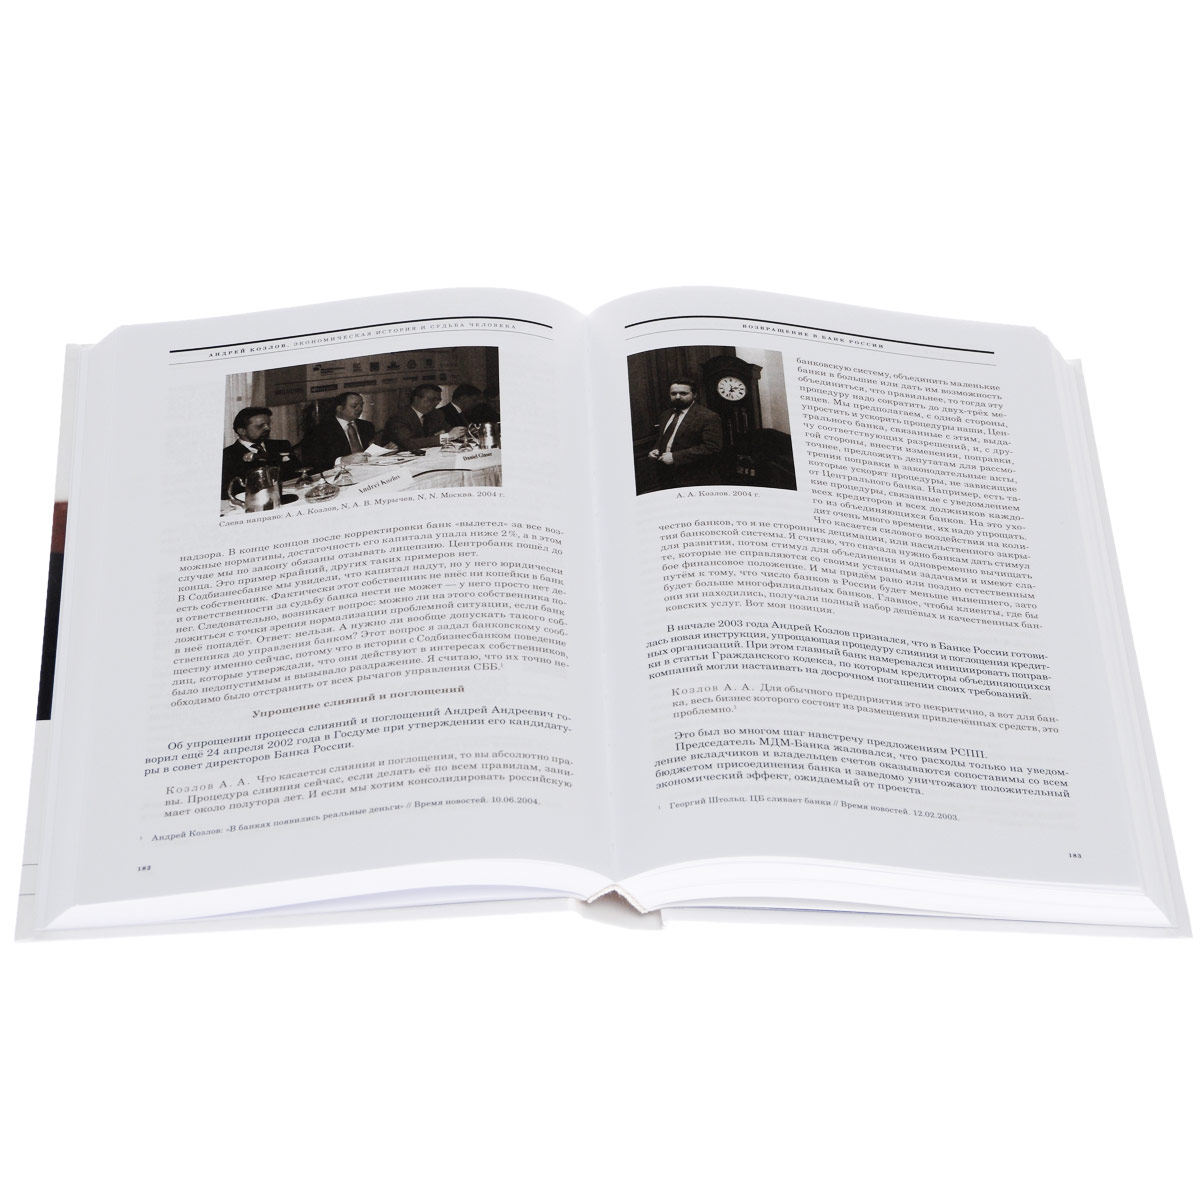 Андрей Козлов. Экономическая история и судьба человека. В 2 томах 2 изменяется внимательно рассматривая